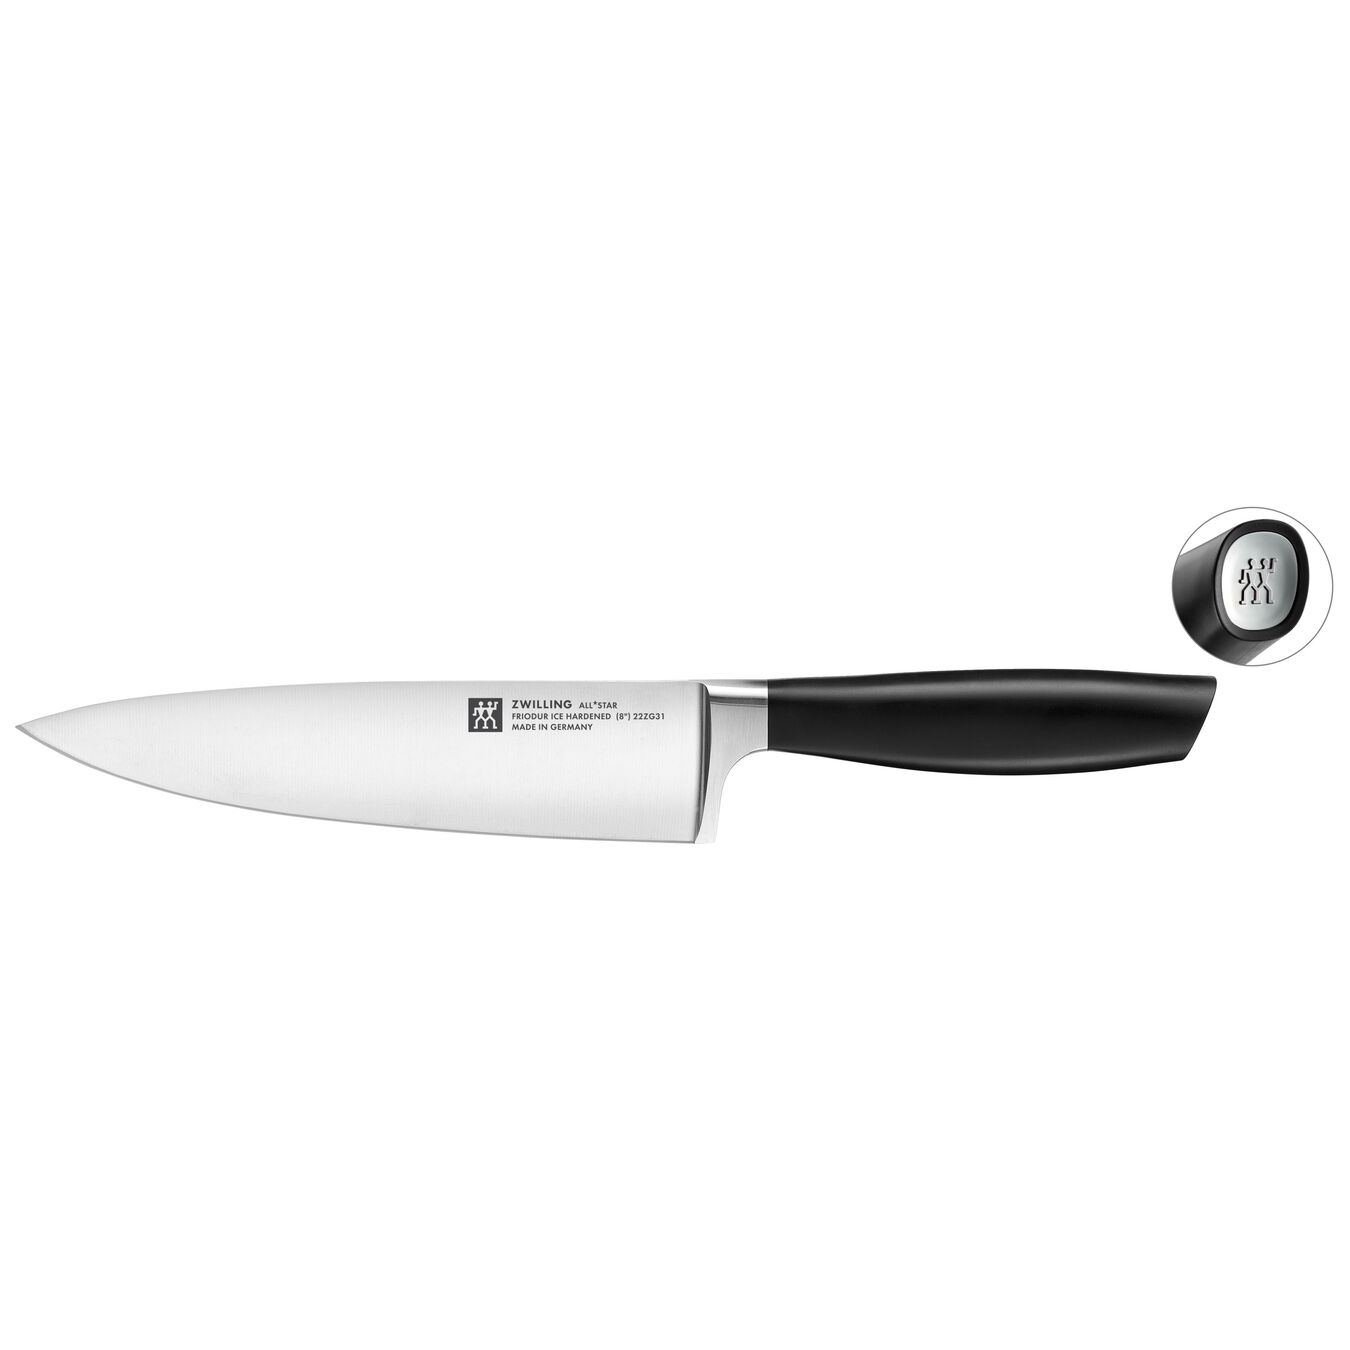 Kokkekniv 20 cm, Sølv,,large 1